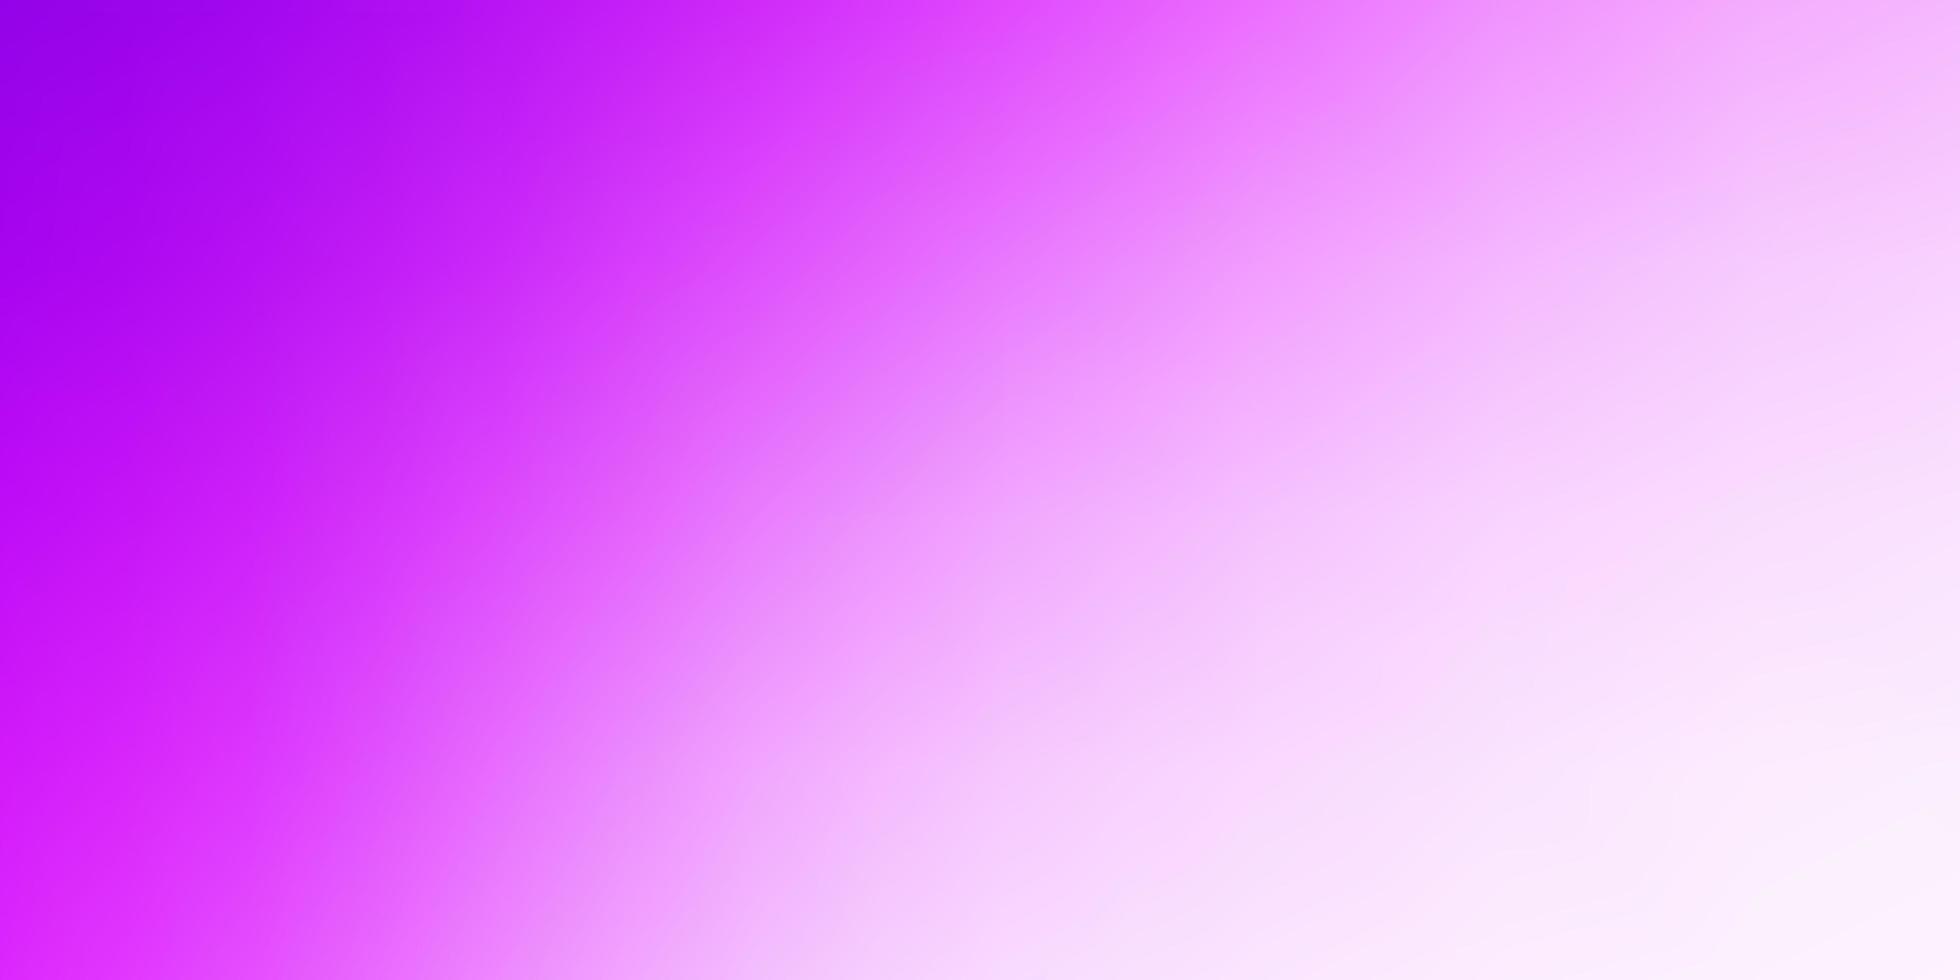 sfondo sfocato astratto vettoriale rosa chiaro.